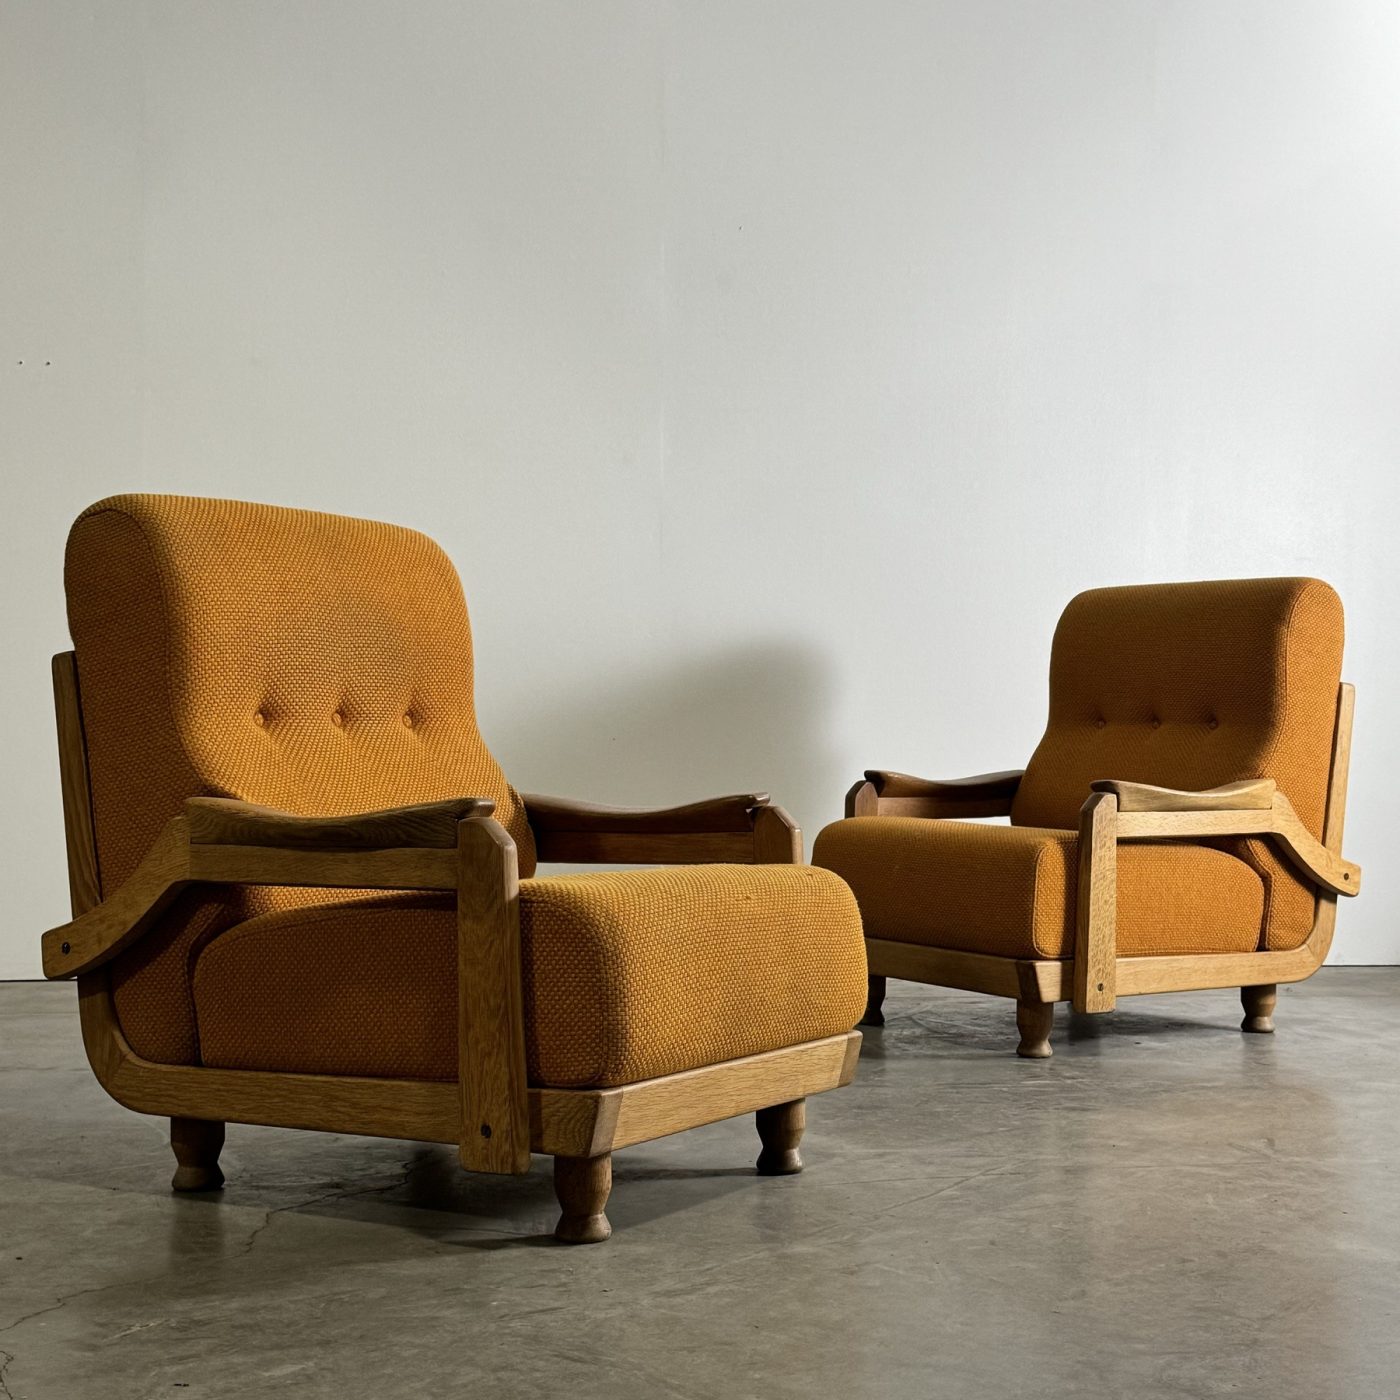 objet-vagabond-guillerme-armchairs0004